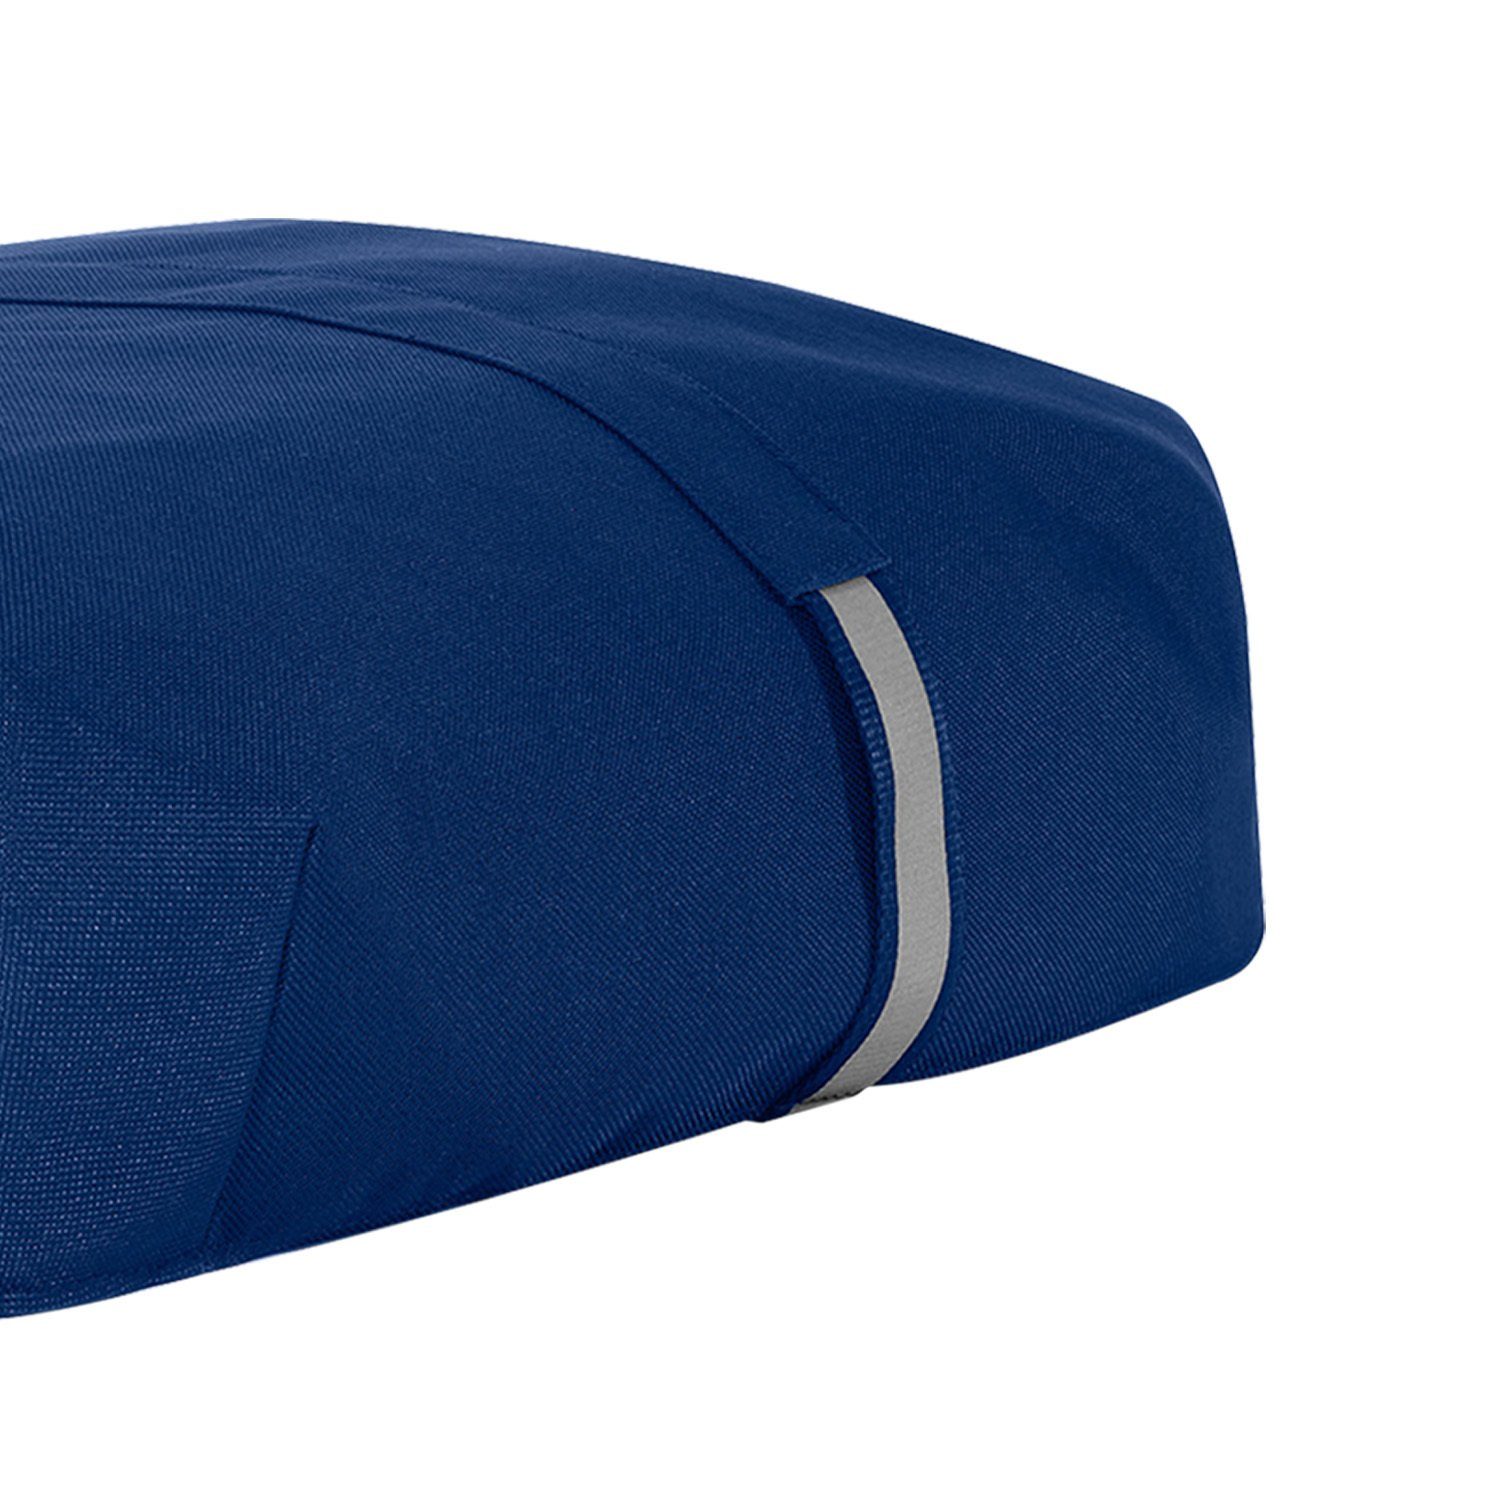 REISENTHEL® Einkaufstrolley Auswahl Abdeckung navy Schutzhülle Wetterschutz Cover carrybag 